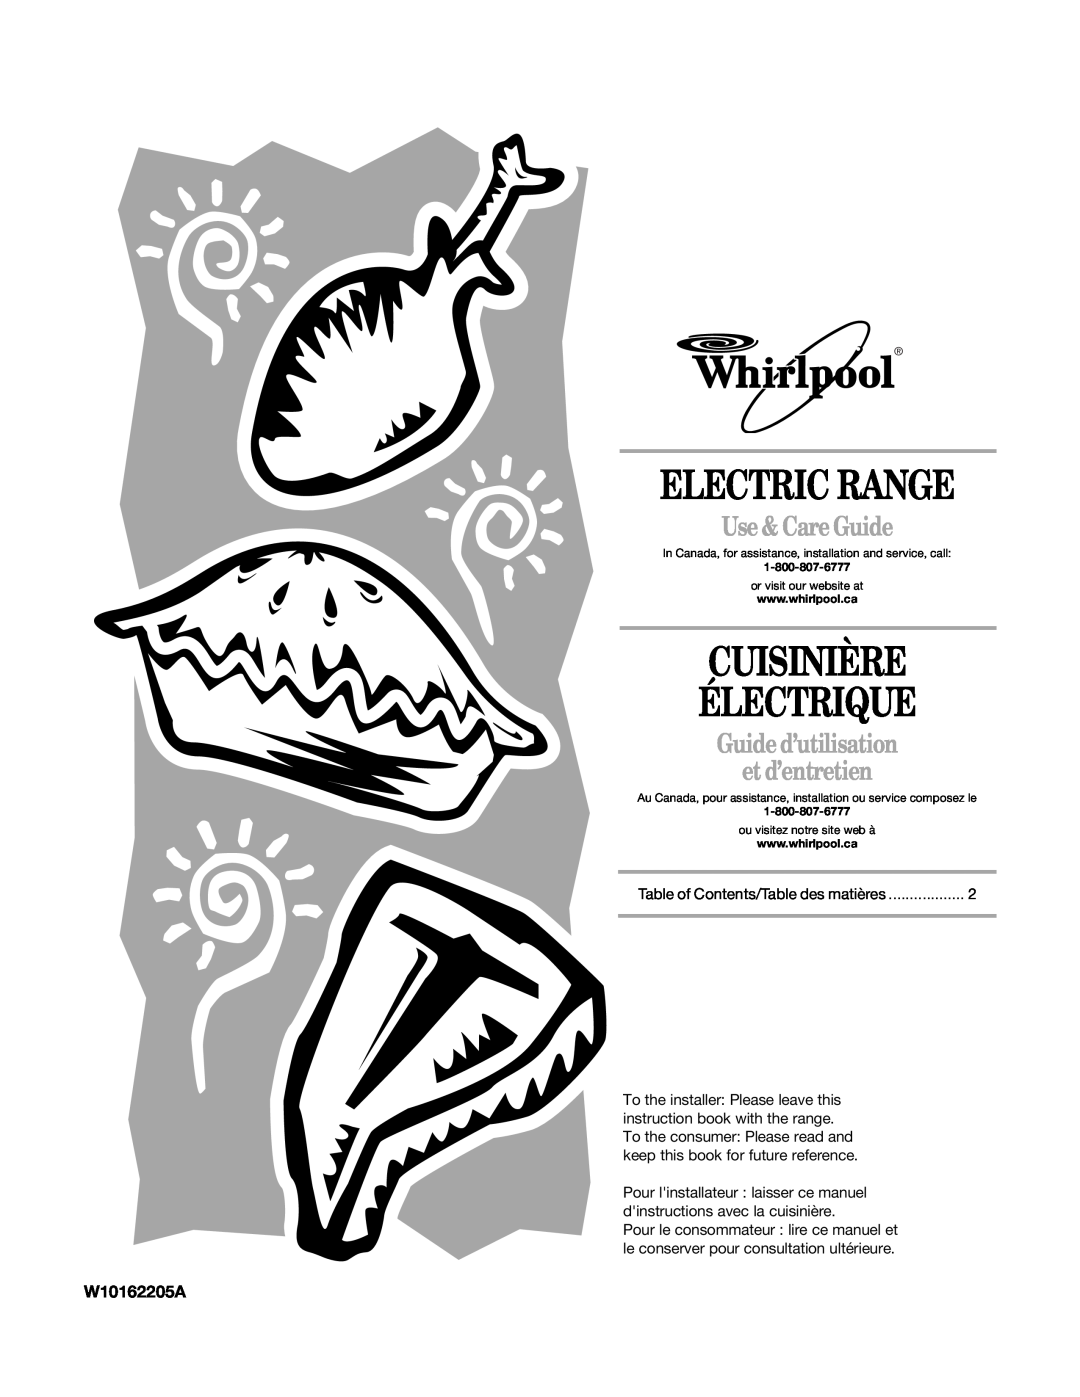 Whirlpool W10162205A manual Electric Range, Cuisinière Électrique, Use & Care Guide, Guide d’utilisation et d’entretien 